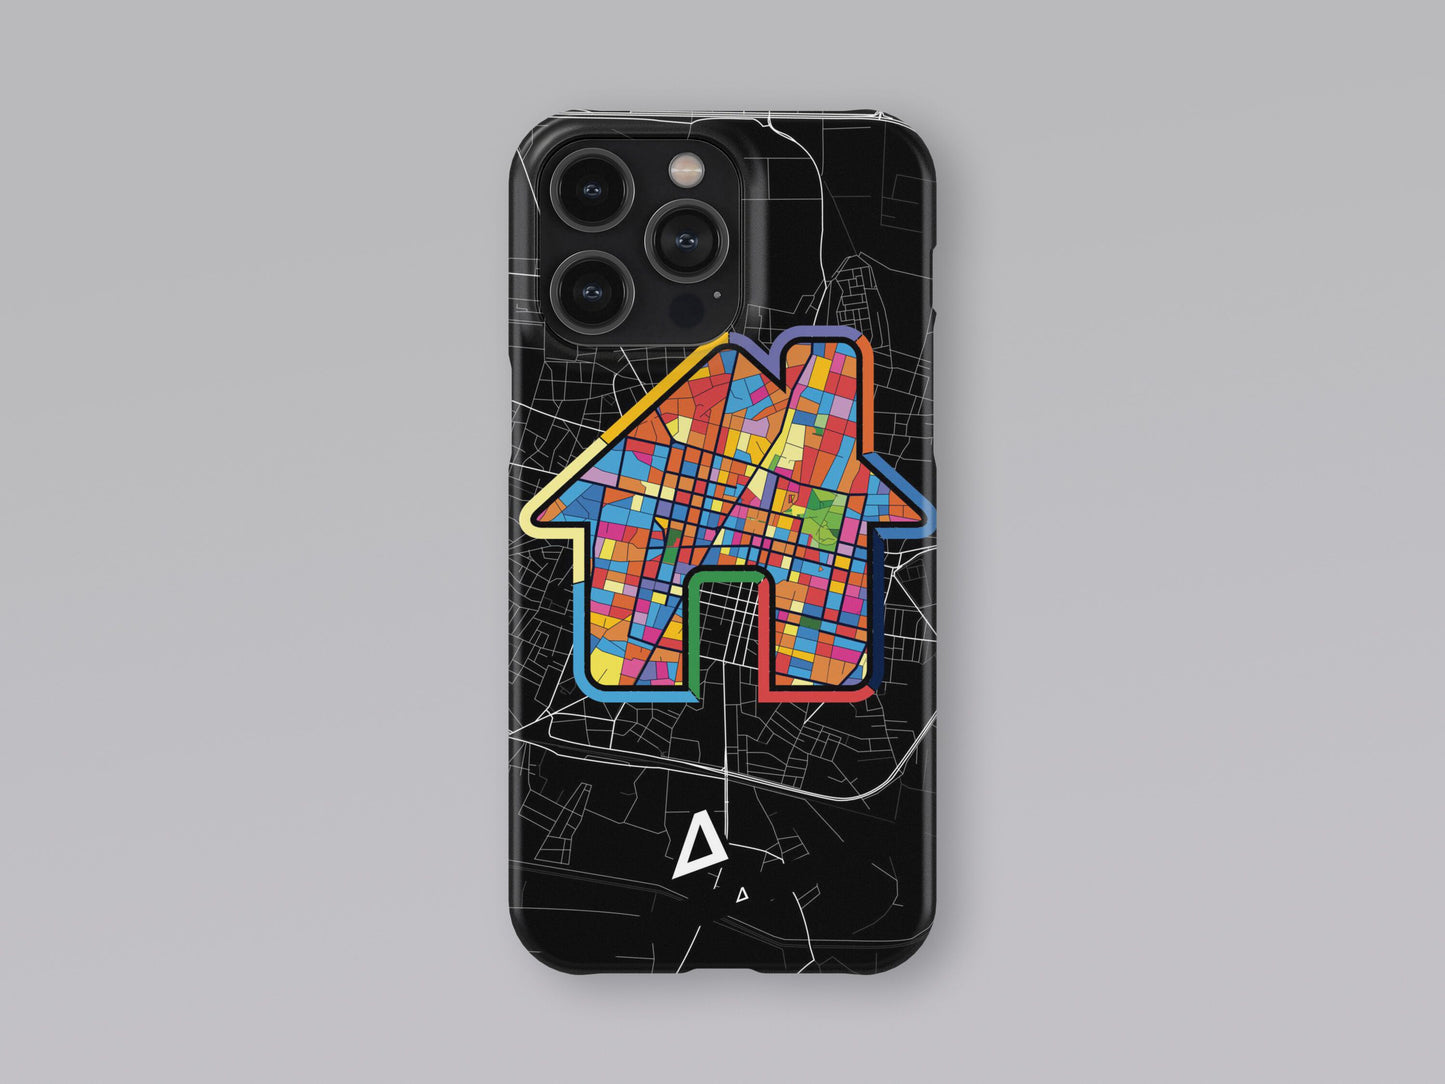 Καρδιτσα Ελλαδα slim phone case with colorful icon 3